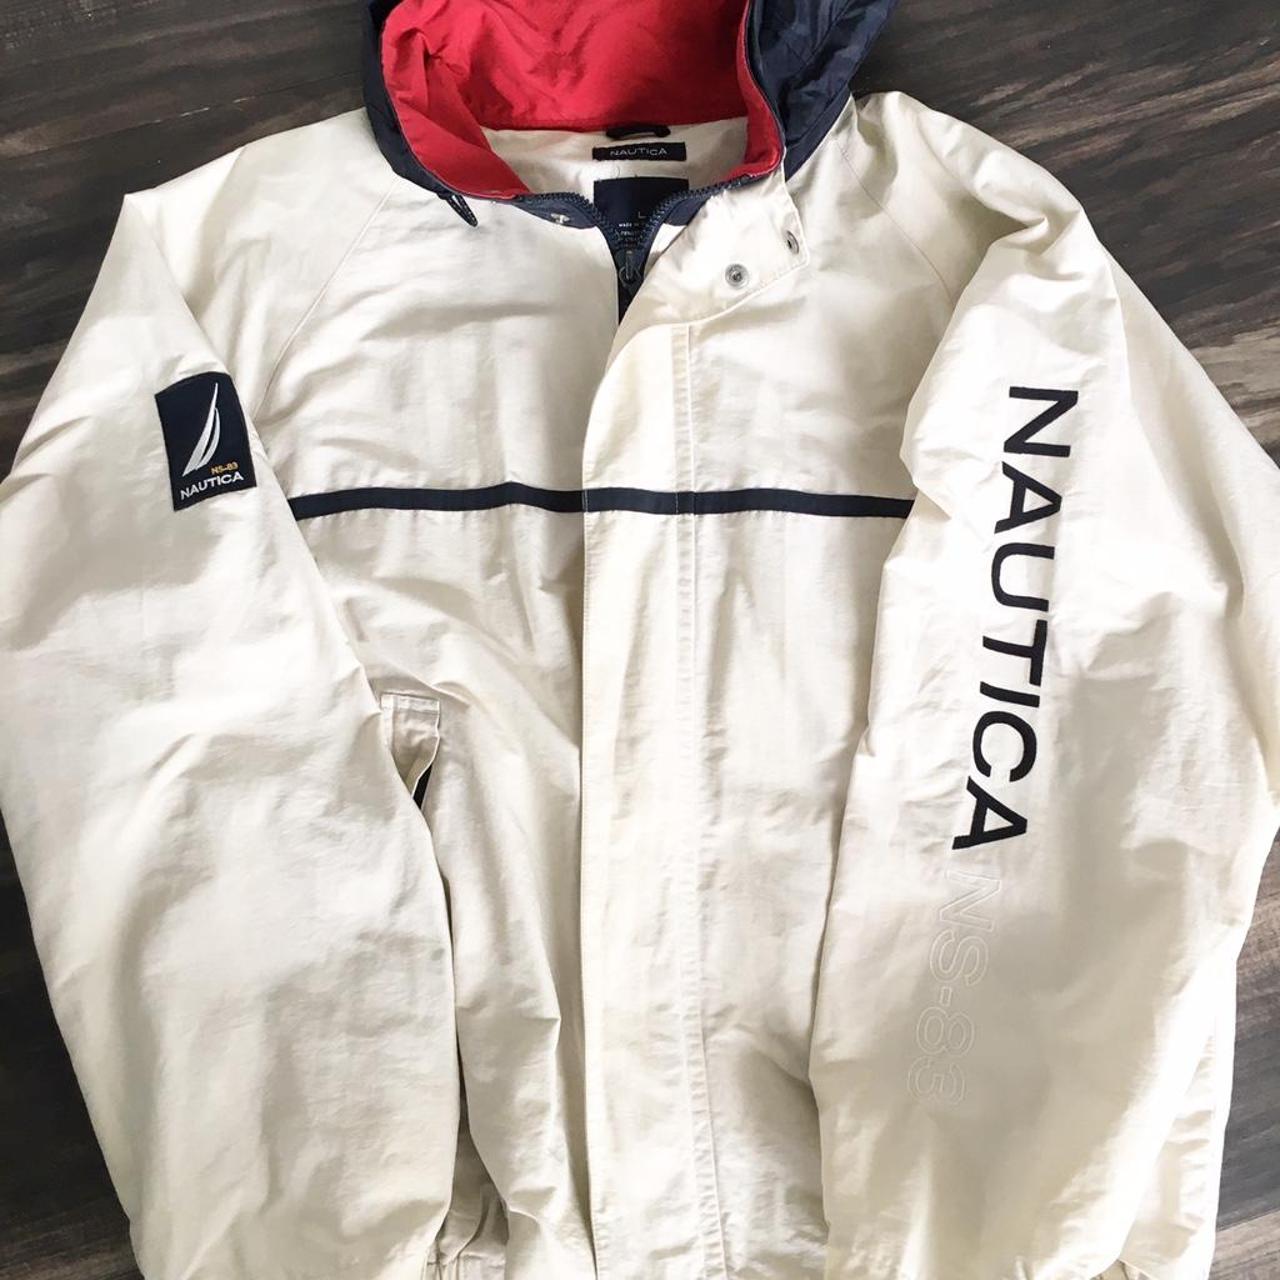 Vintage 90s Nautica jacket. Logo on one sleeve,... - Depop